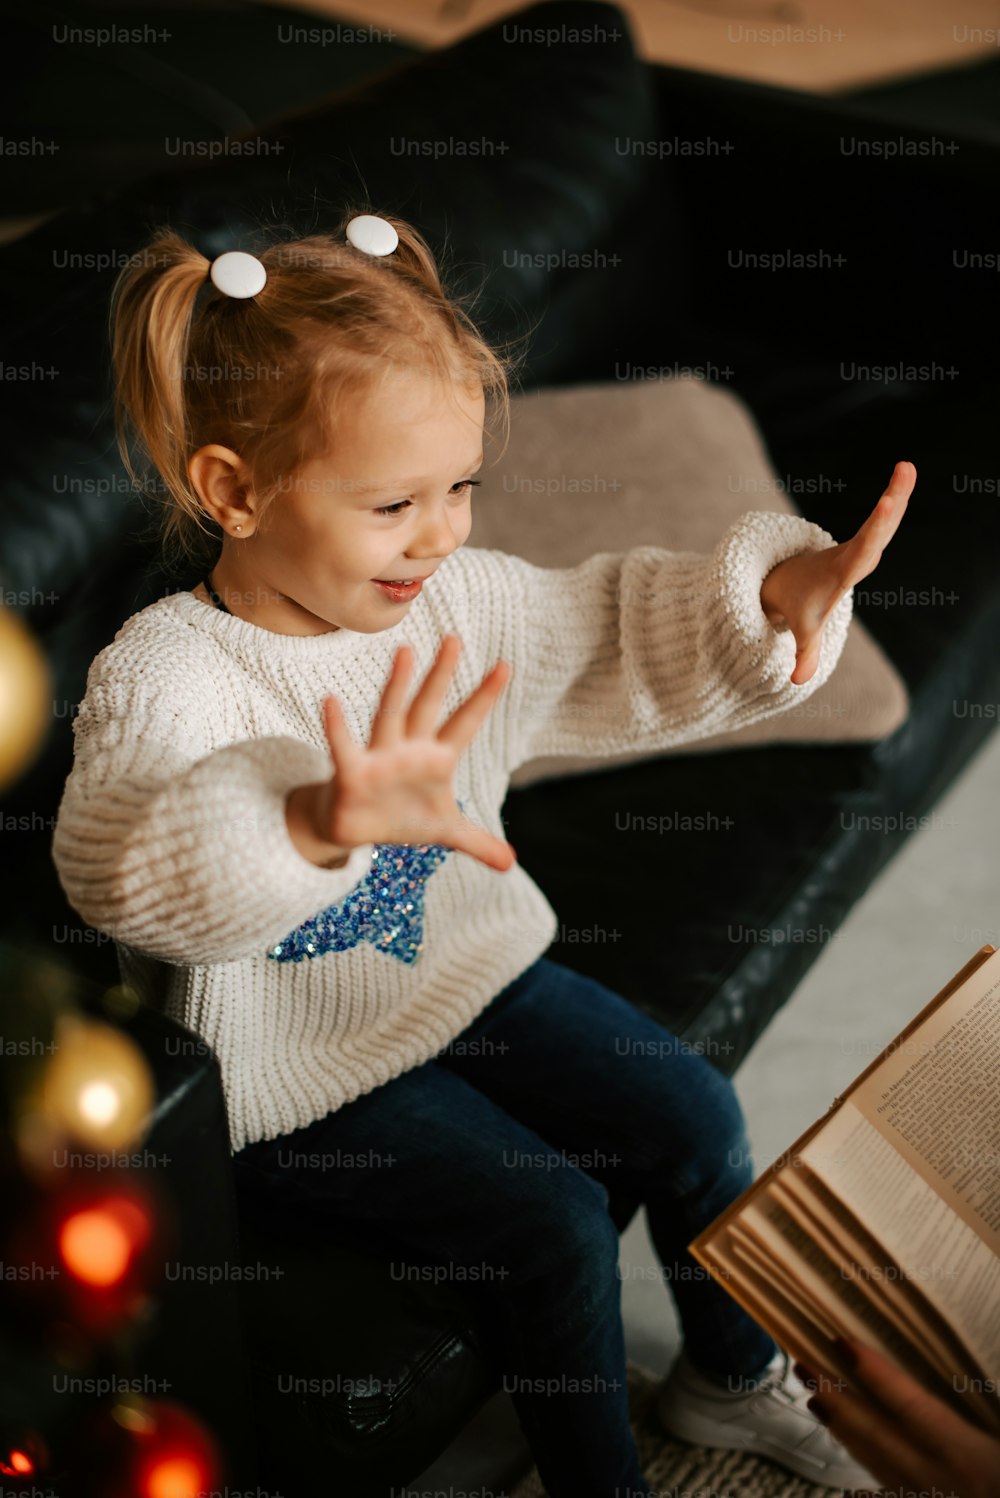 소파에 앉아 책을 들고 있는 어린 소녀